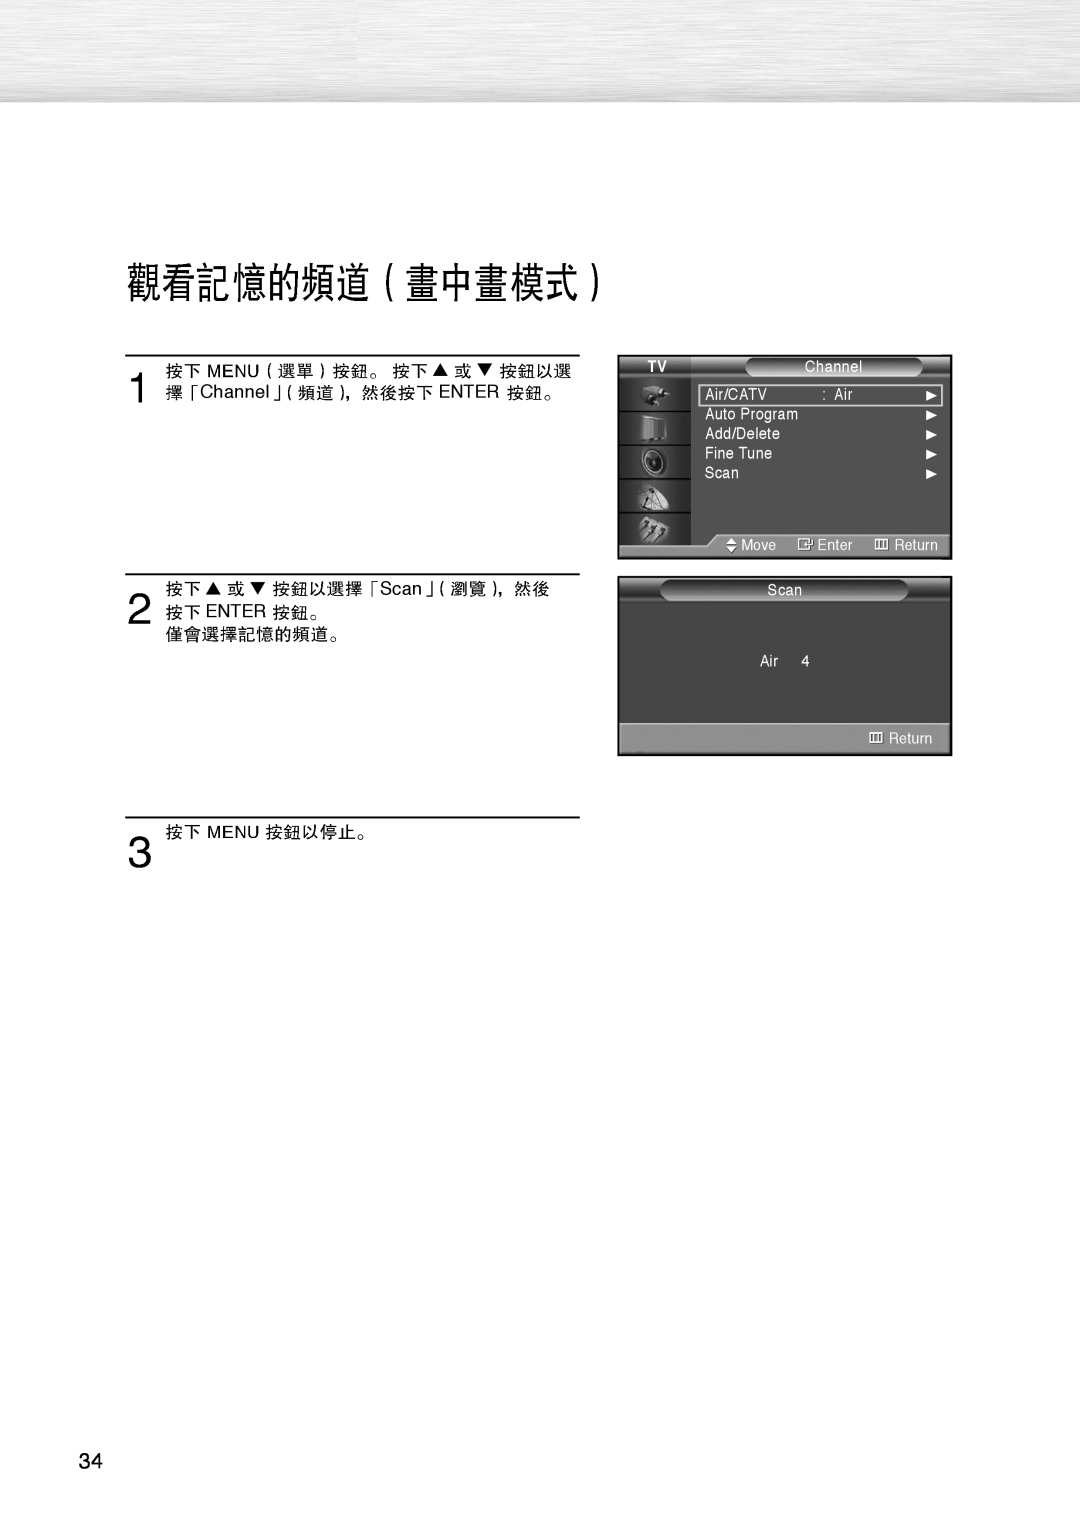 Samsung PL-42D4S manual Channel ENTER, Scan, Enter 